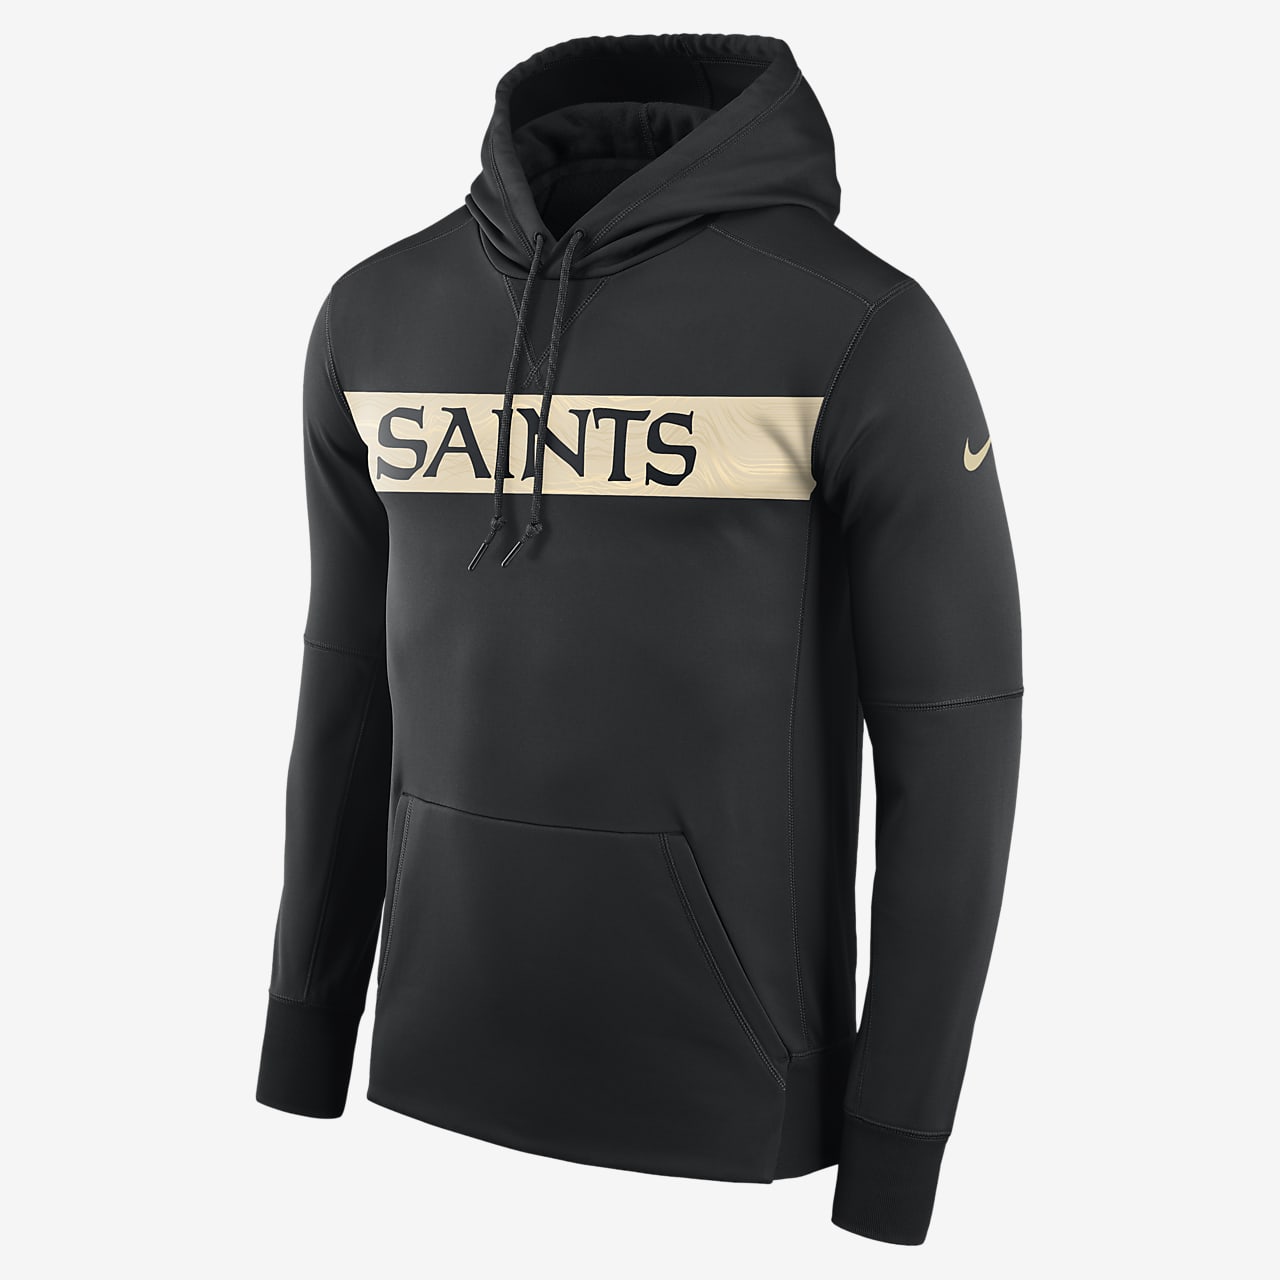 nike saints jacket